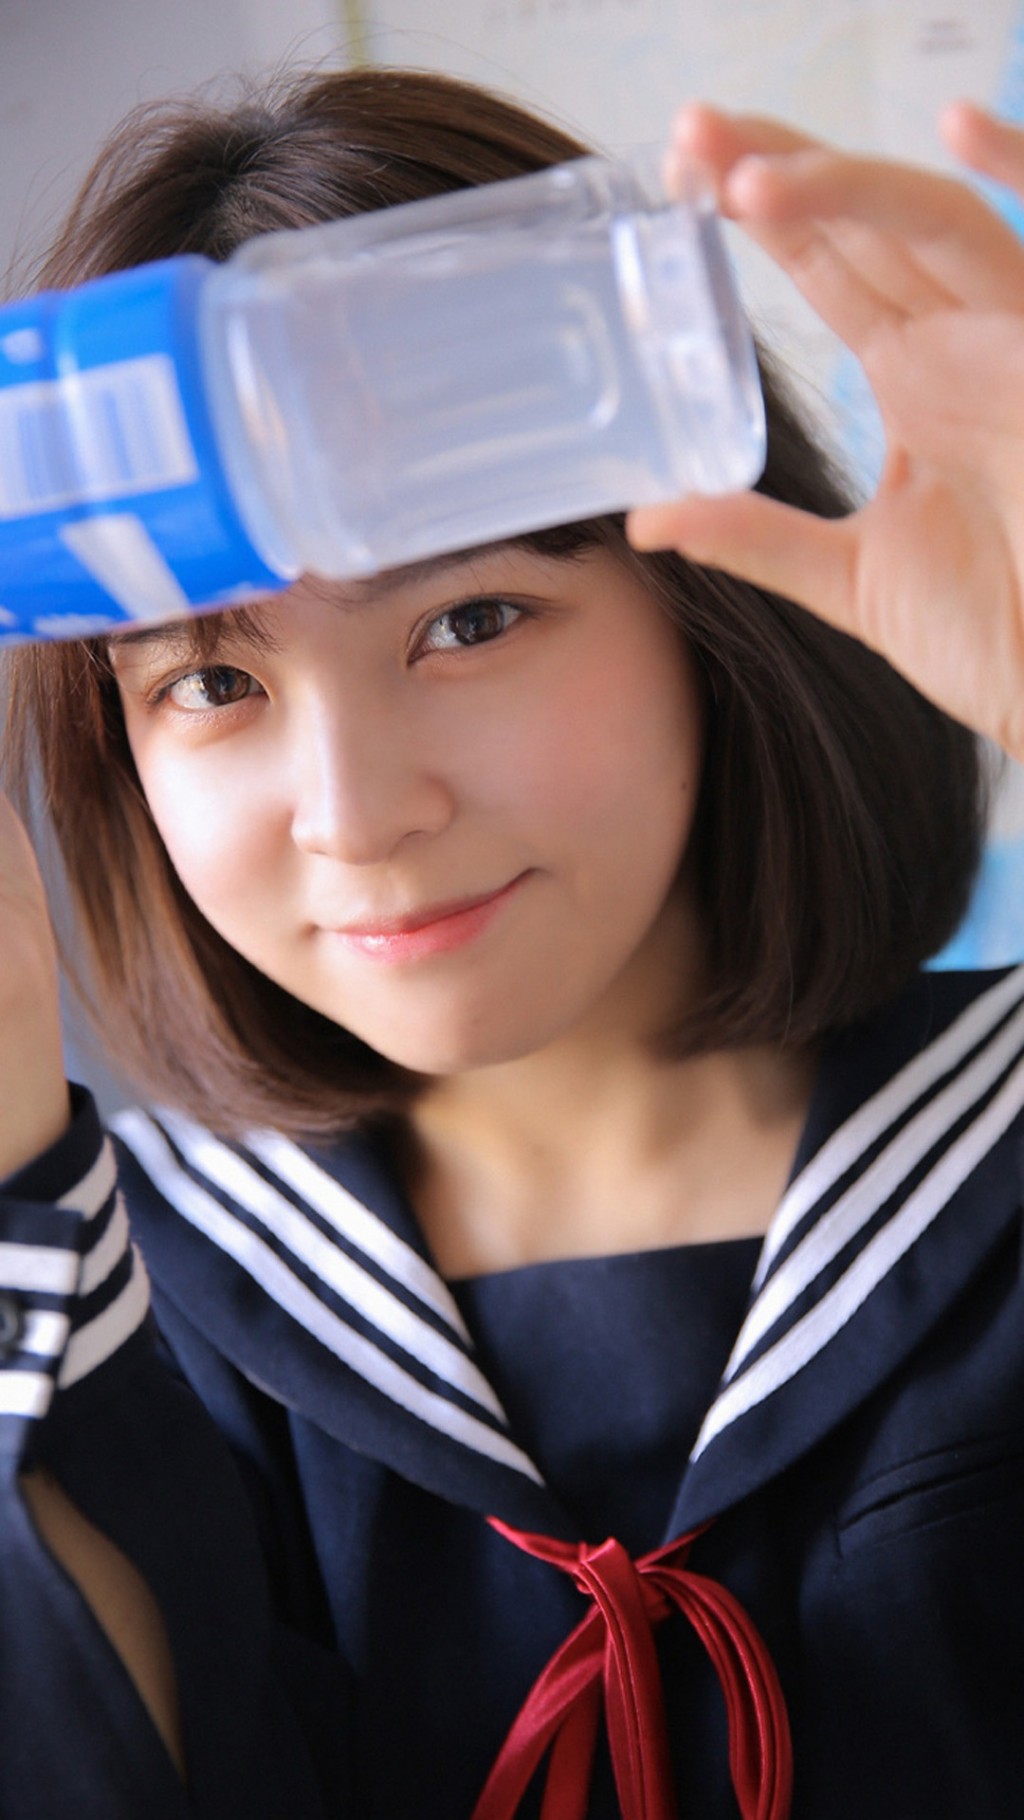 日本校服美少女清纯可爱活泼高清手机壁纸